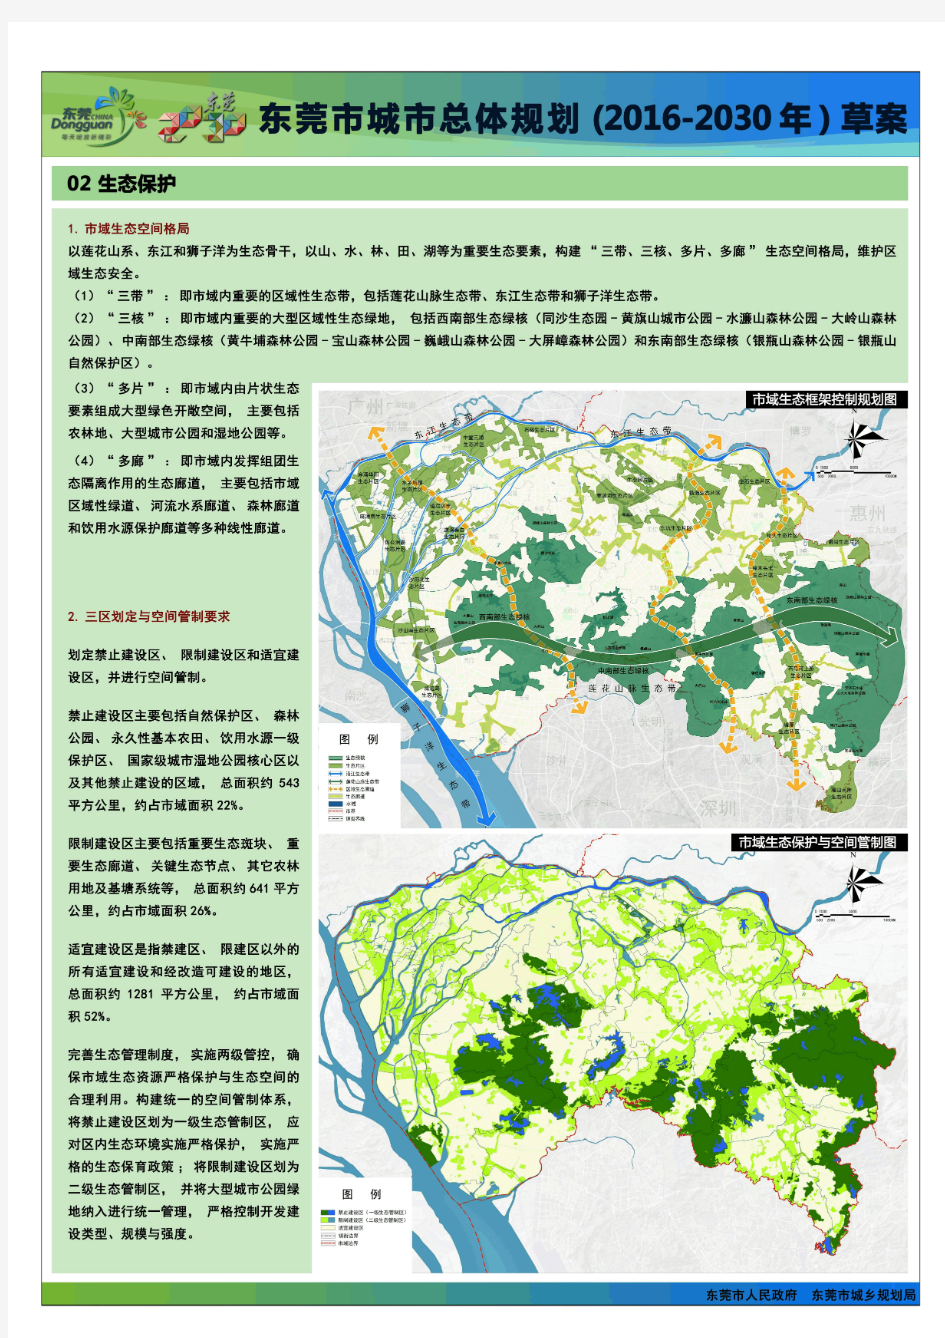 《东莞市城市总体规划(2016-2030)》草案